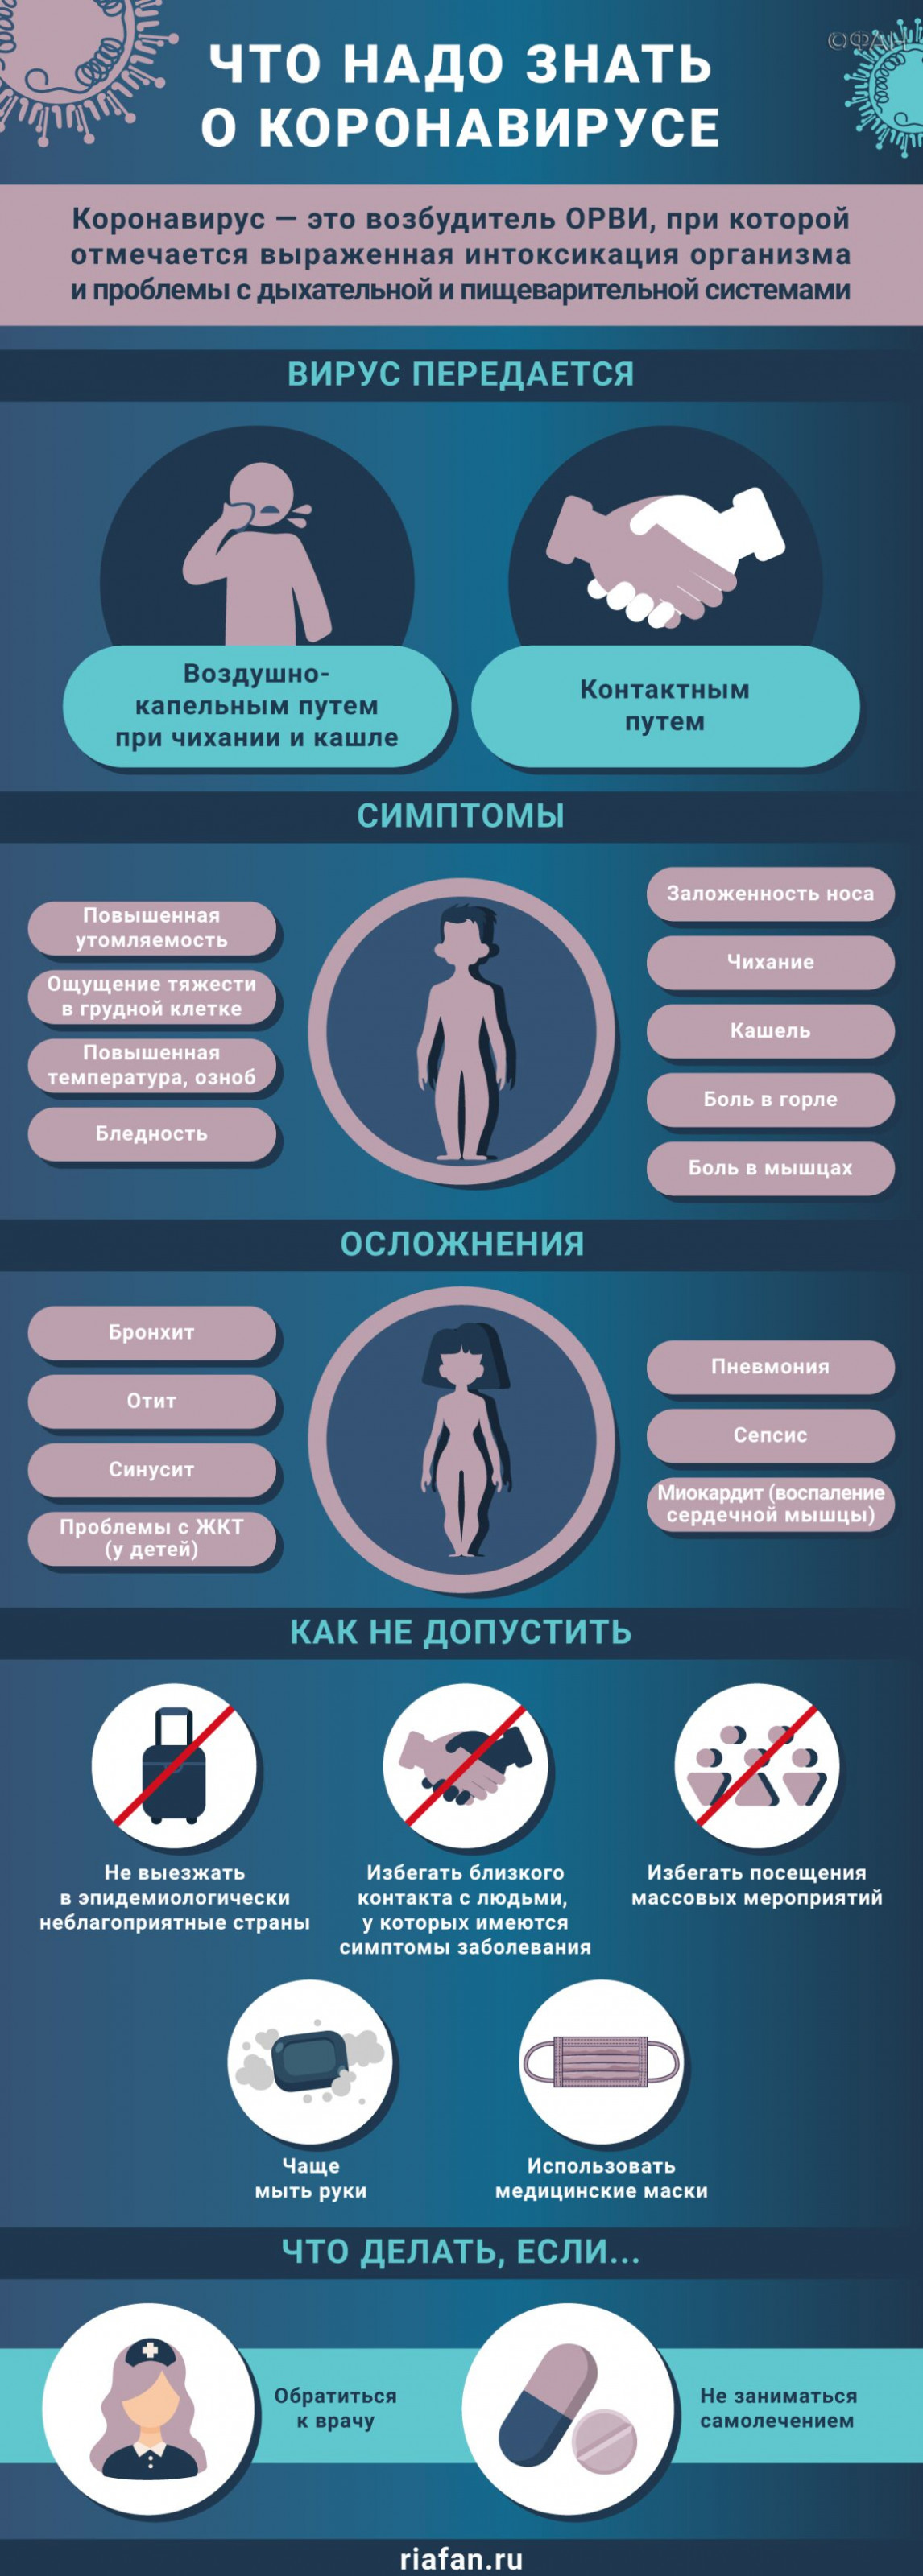 В Петербурге за сутки выявили 155 случаев коронавируса